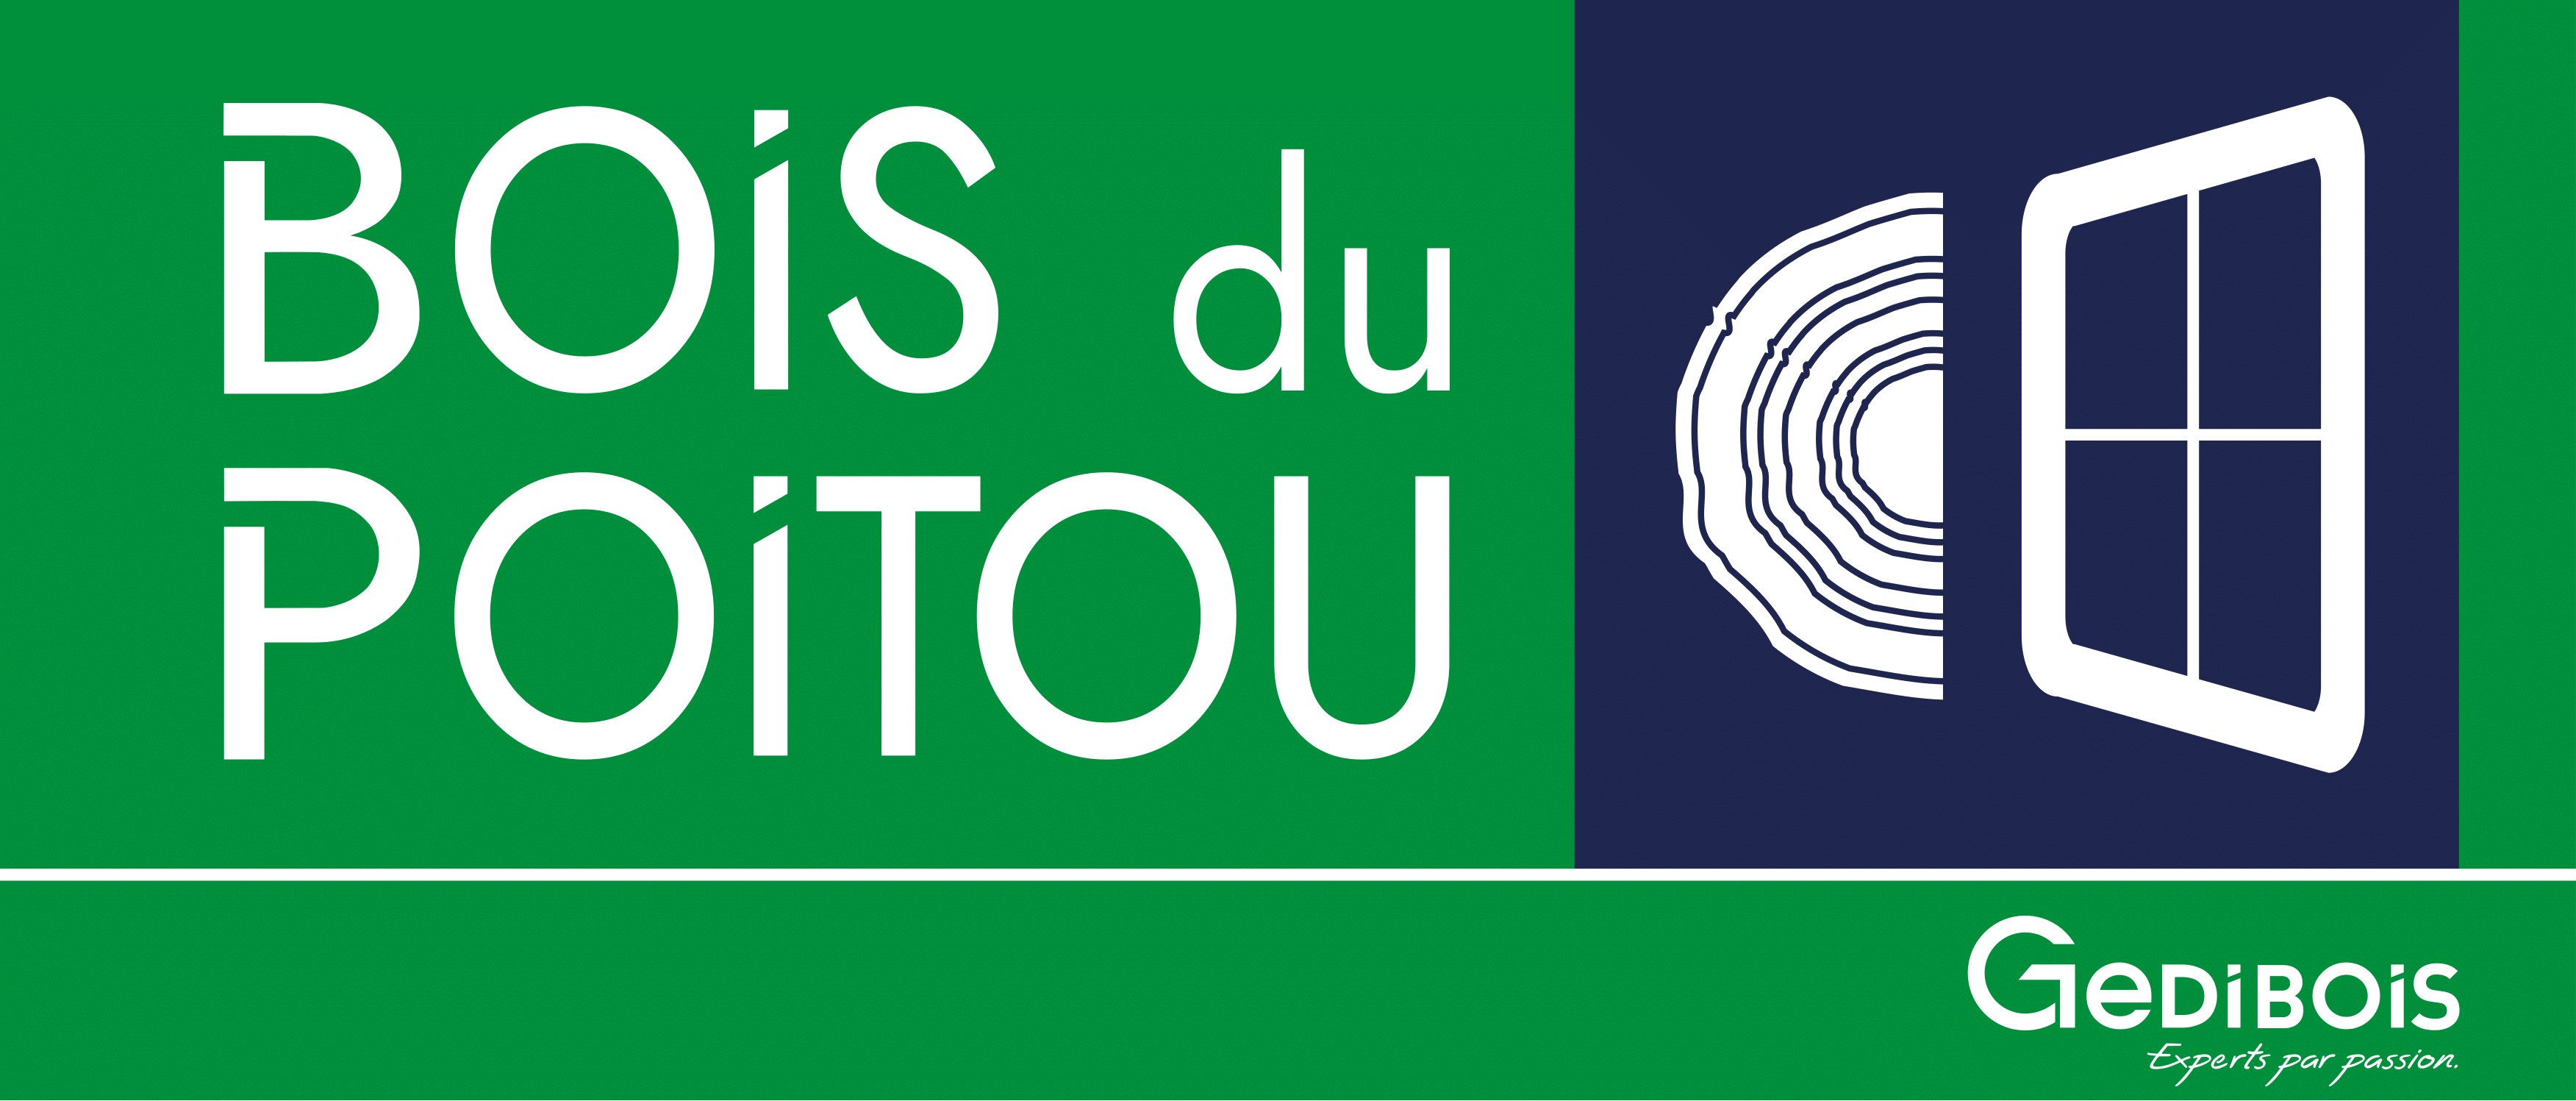 Bois du Poitou Logo